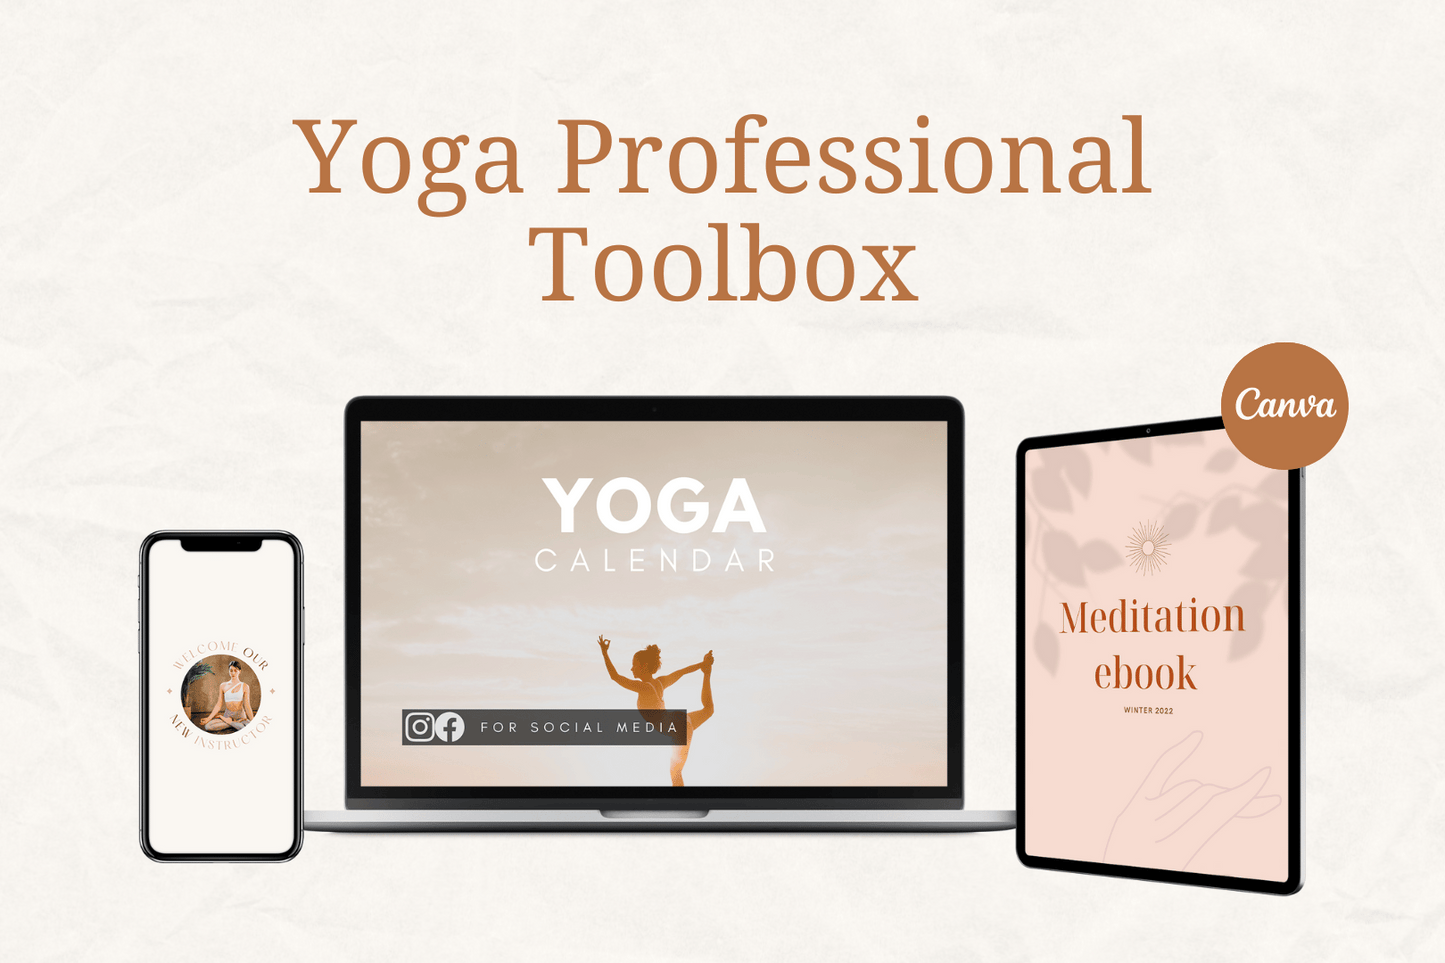 Yoga Professionals Toolbox™